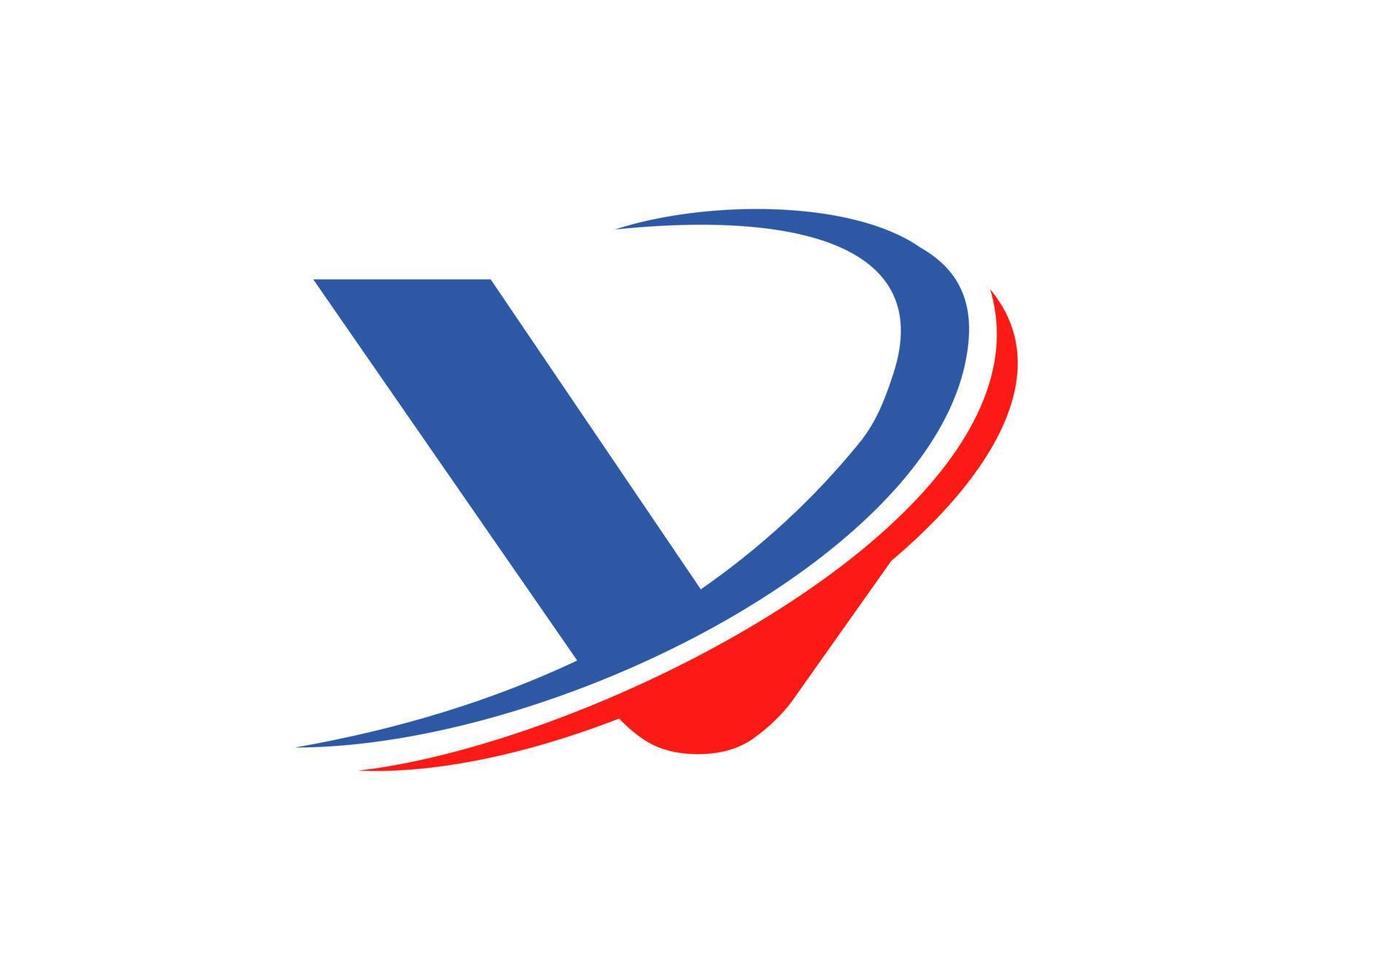 V Letter Business Logo Template. Initial V logo design for real estate, financial, marketing, management, construction etc vector